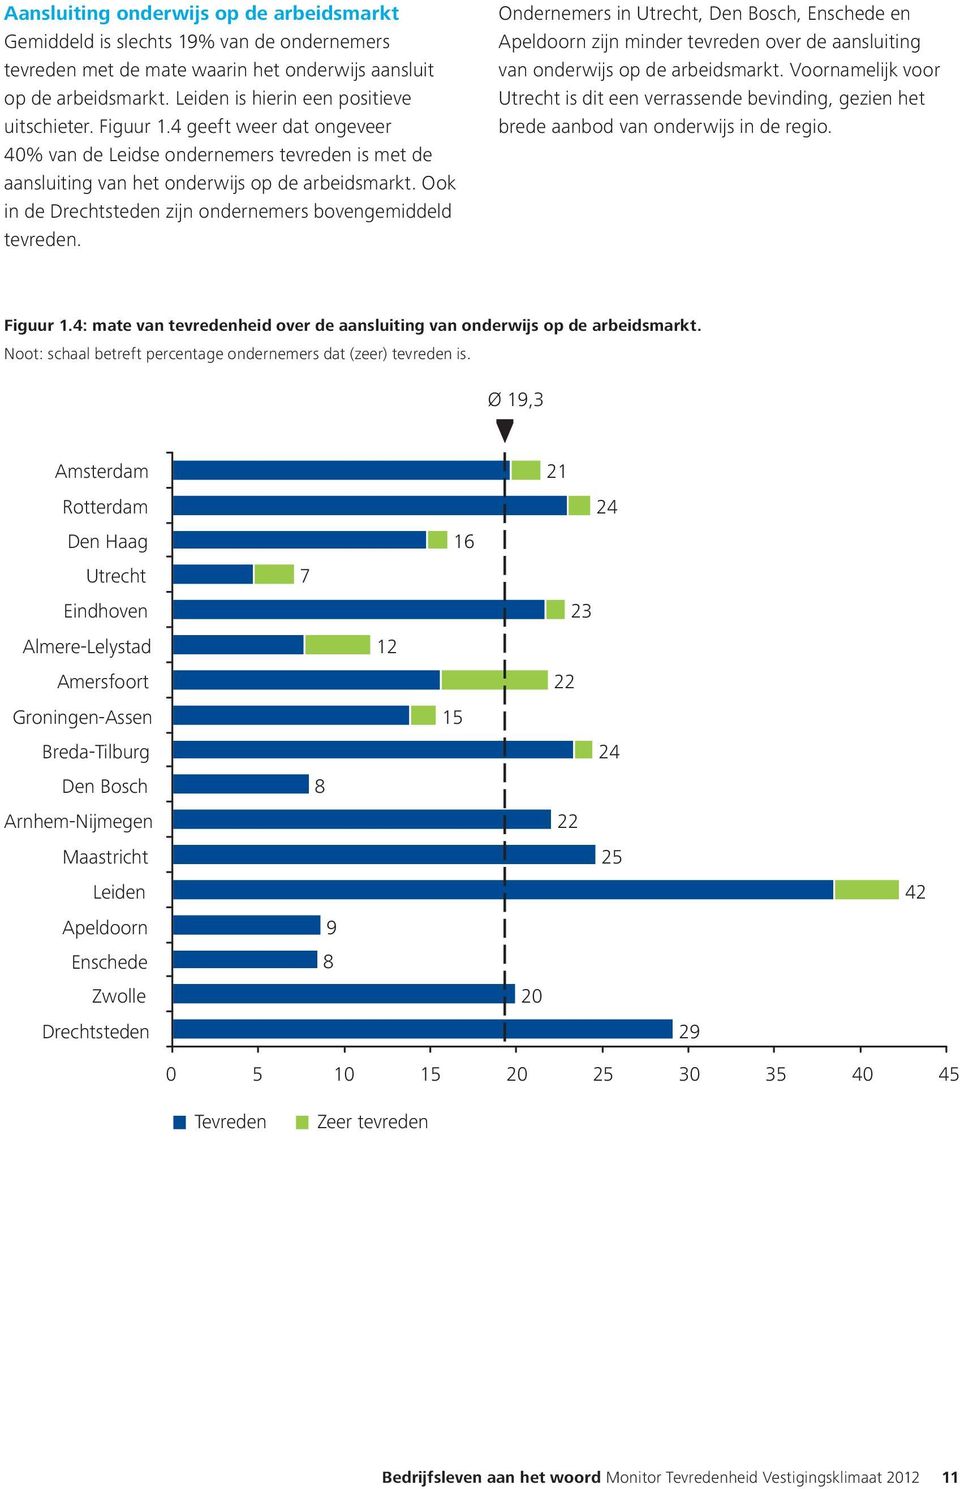 Ondernemers in Utrecht, Den Bosch, Enschede en Apeldoorn zijn minder tevreden over de aansluiting van onderwijs op de arbeidsmarkt.